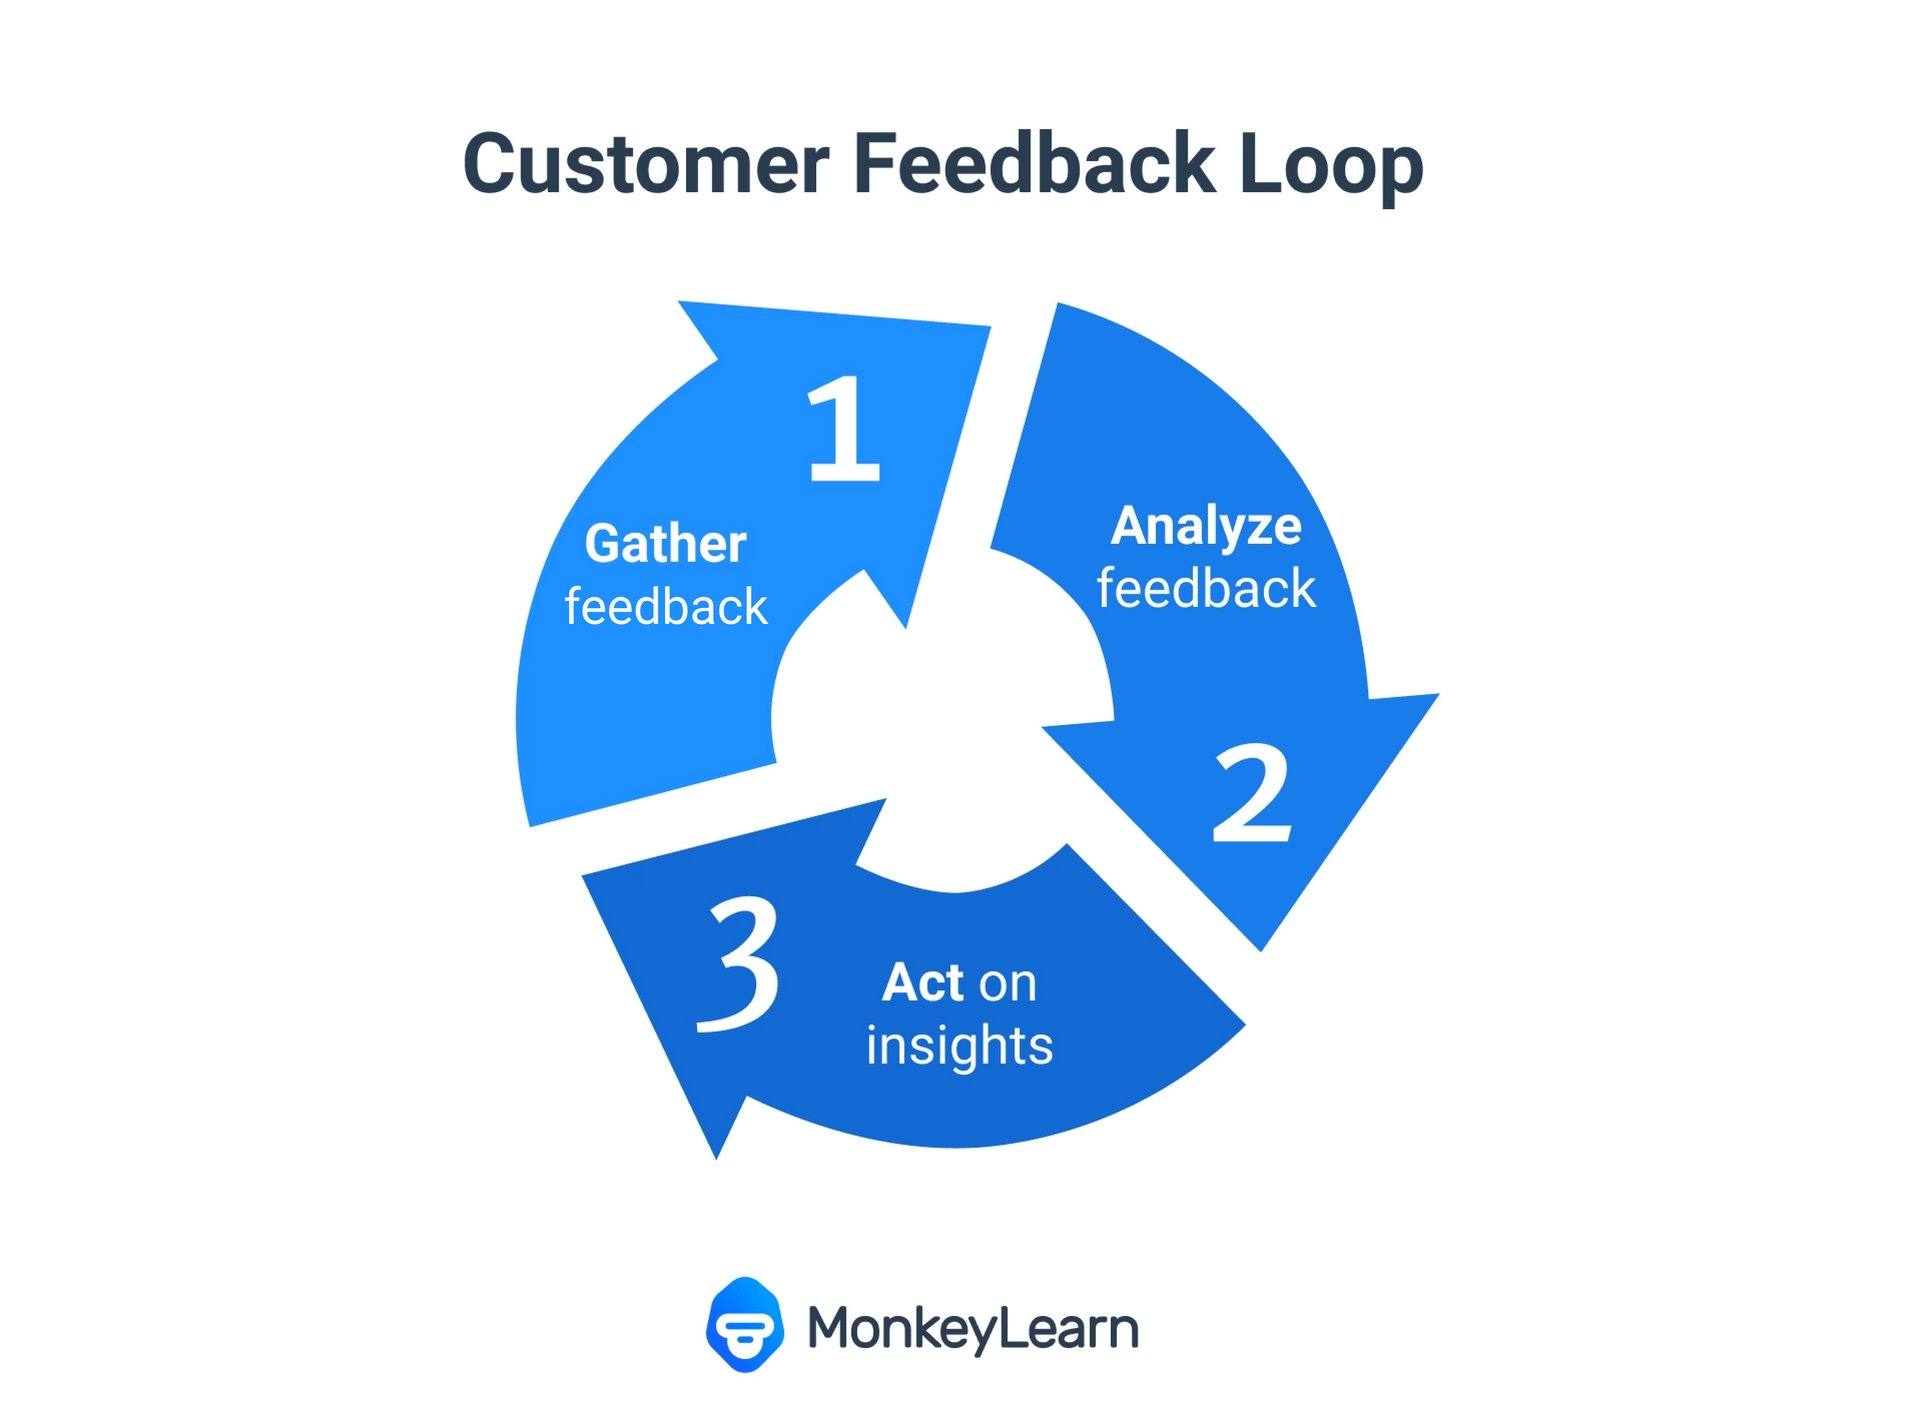 Customer feedback loop. Gather data, analyze feedback, act on insights.